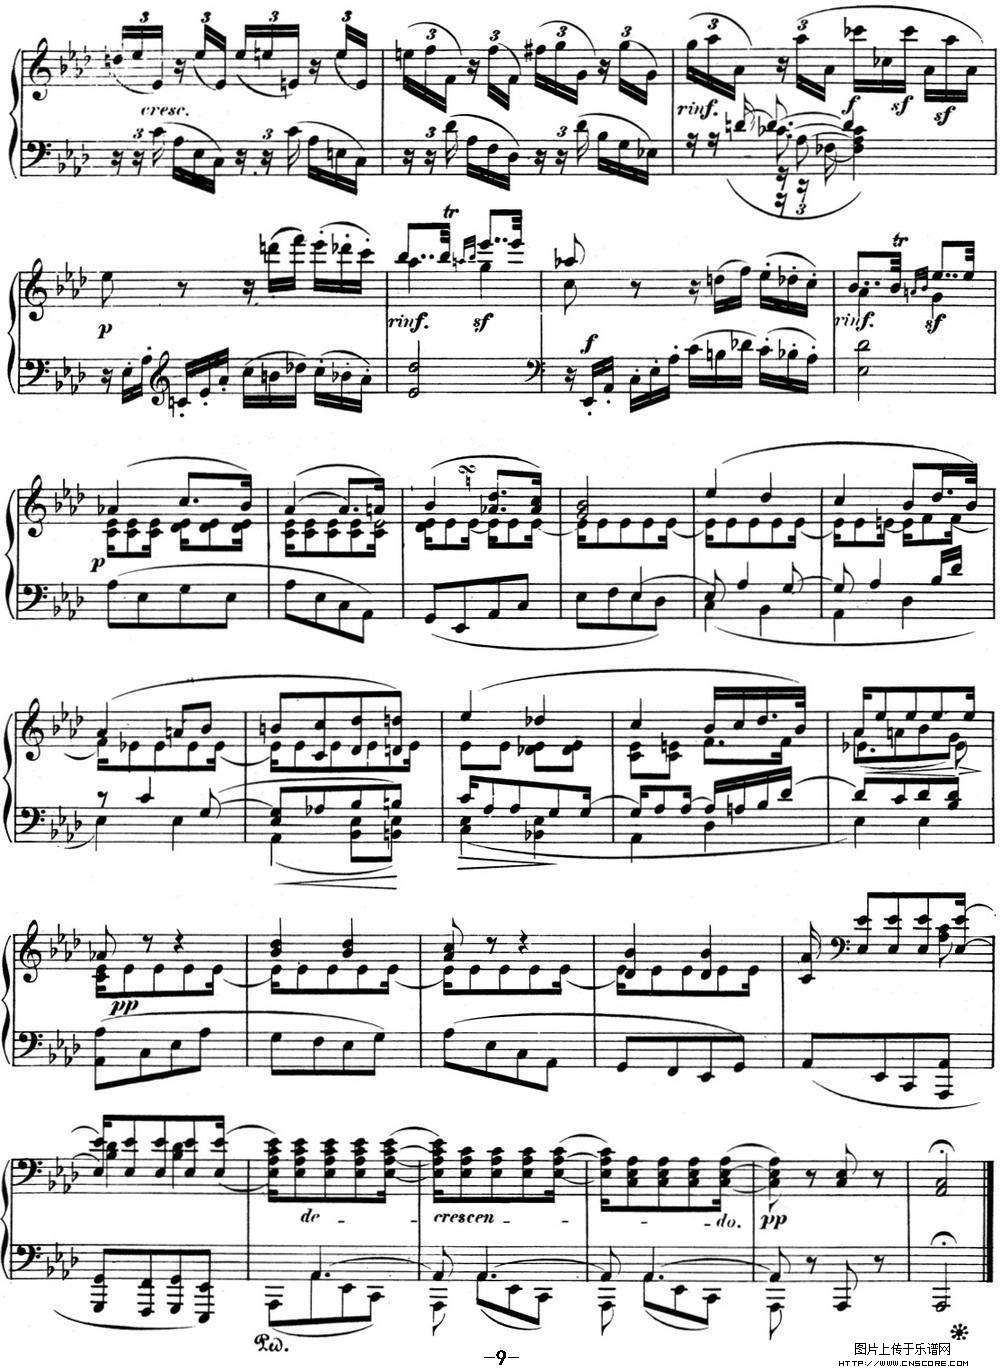 贝多芬钢琴奏鸣曲集名字(贝多芬钢琴奏鸣曲集人民音乐出版社)